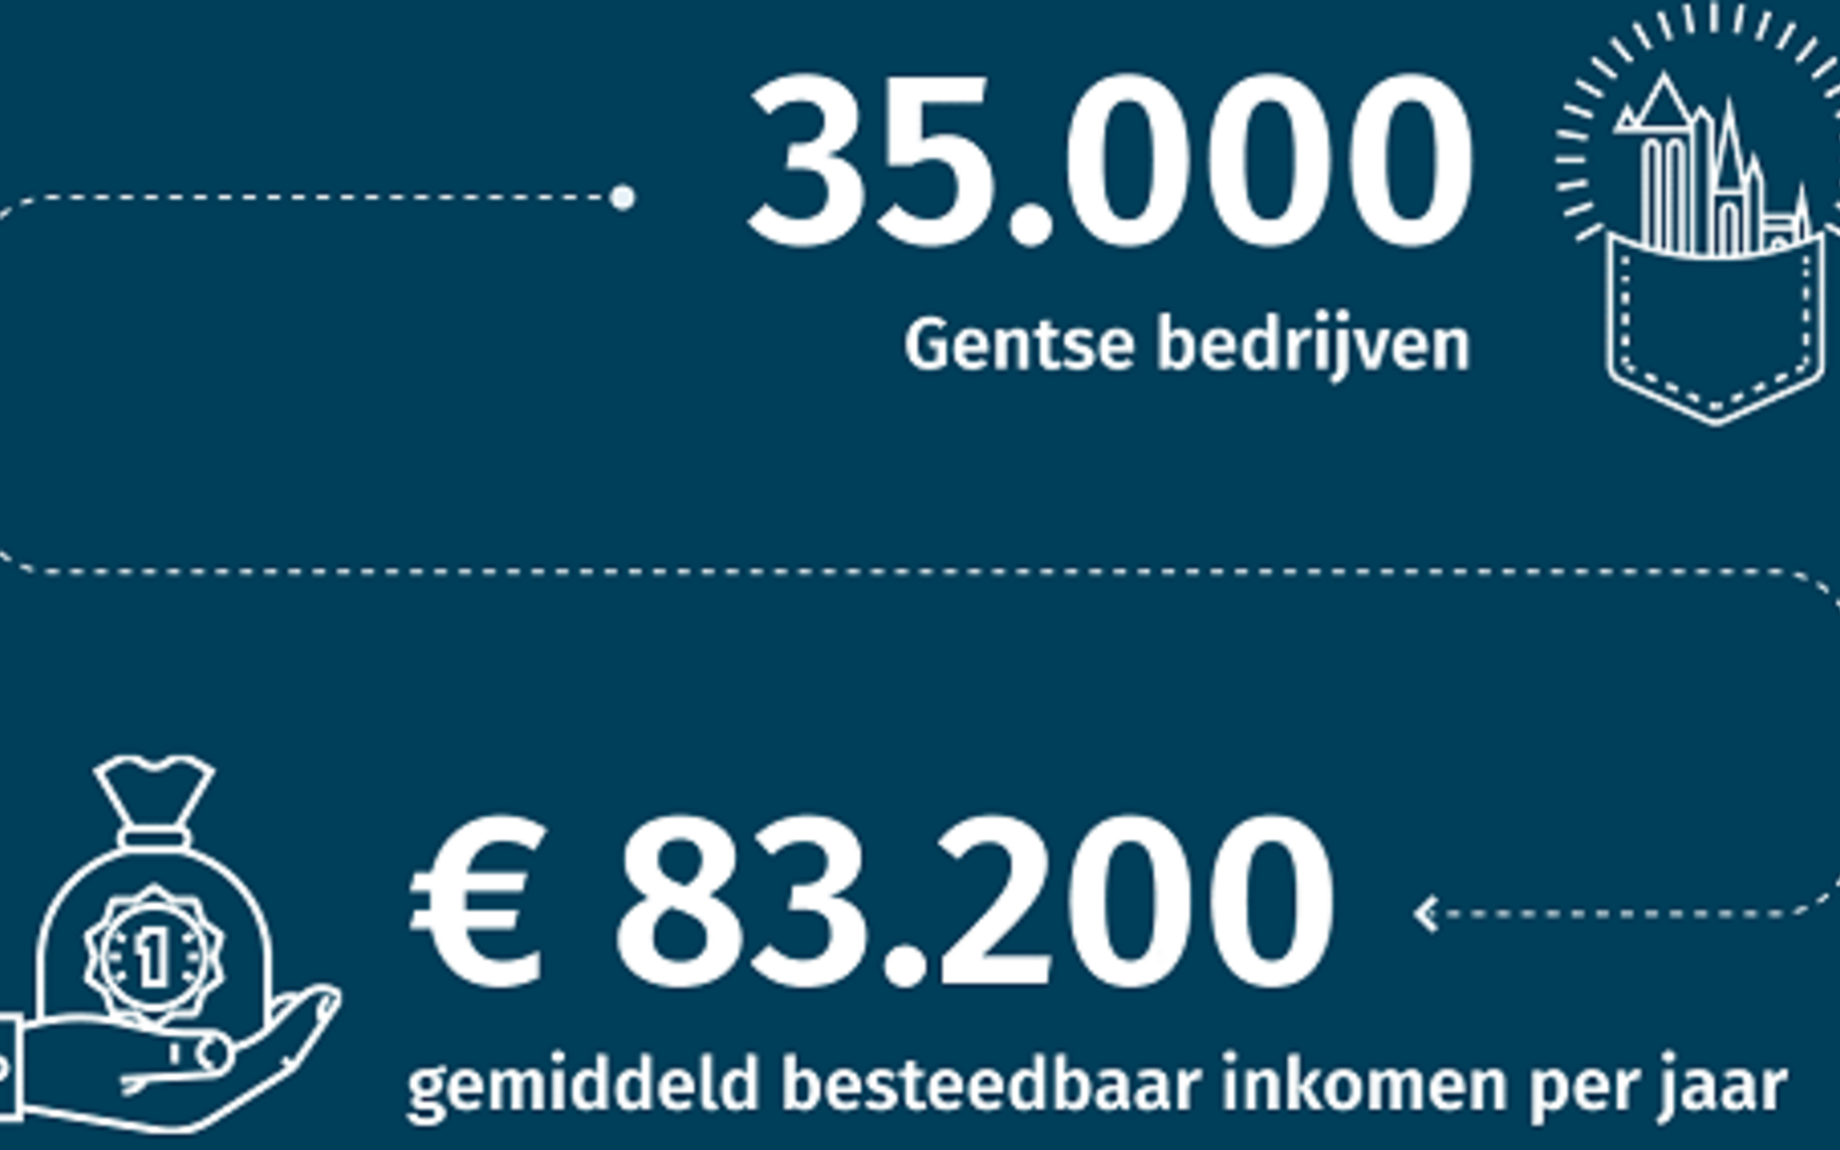 Invest in Ghent - talent - bedrijven NL II